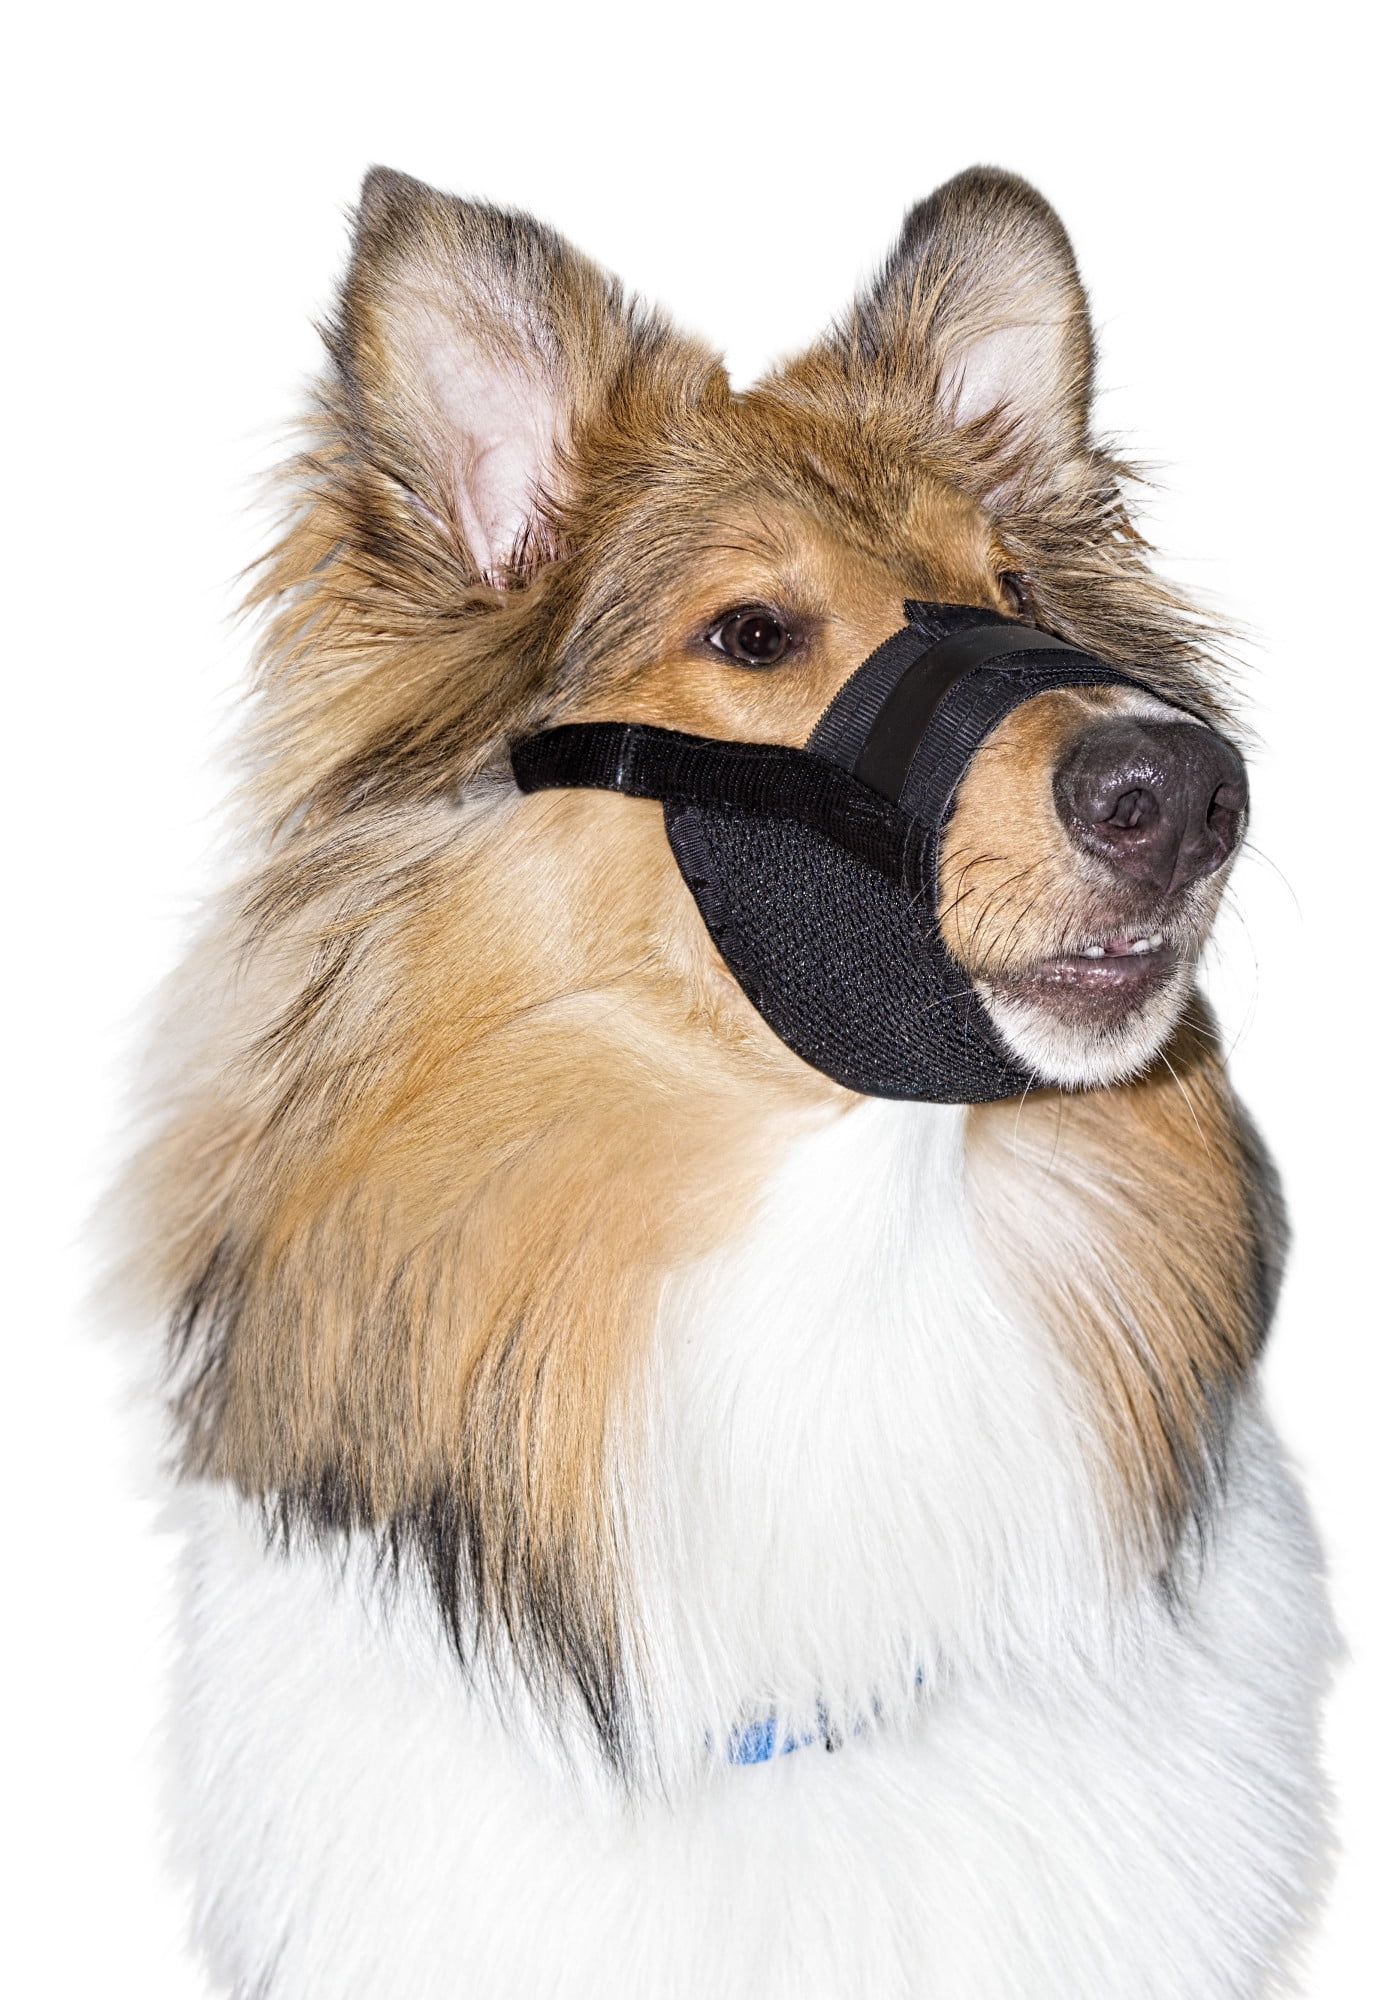 ultra dog muzzle instructions